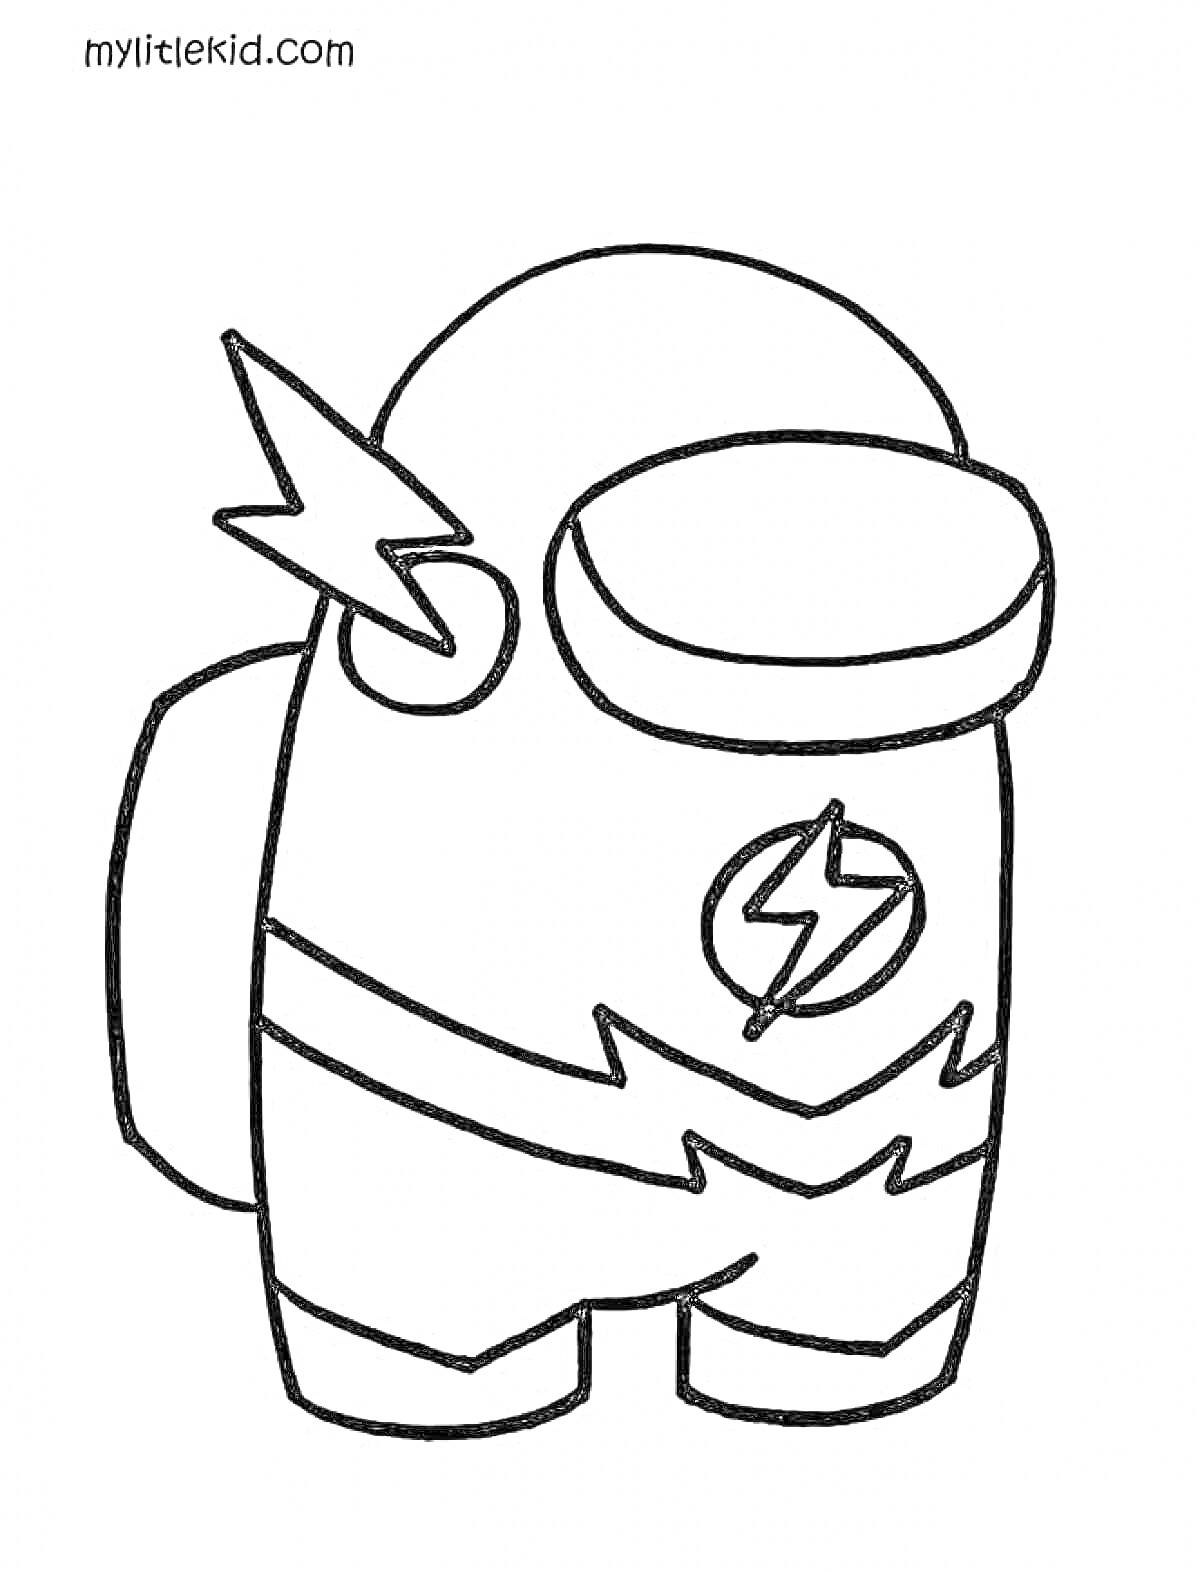 Раскраска Персонаж из игры Among Us в костюме супергероя с молниями и логотипом молнии на груди